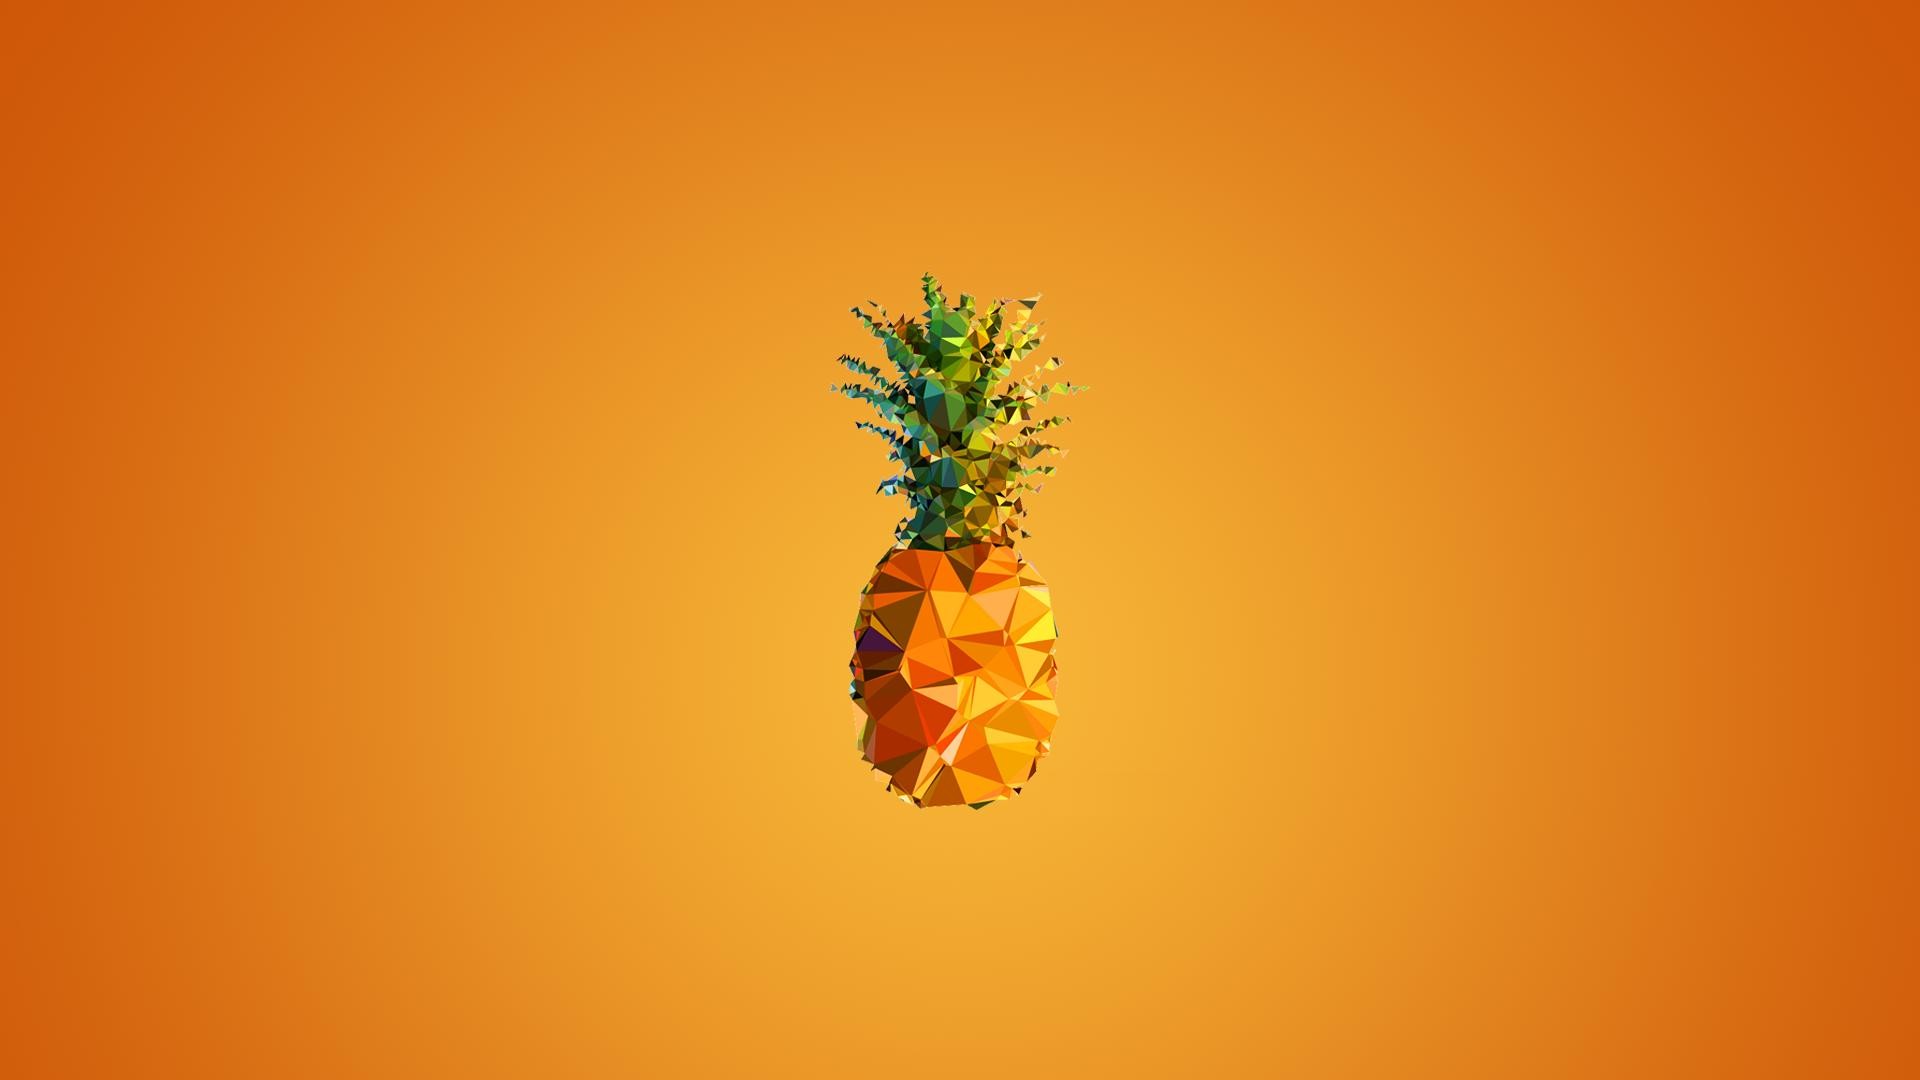 General 1920x1080 minimalism pineapples fruit digital art food gradient orange background